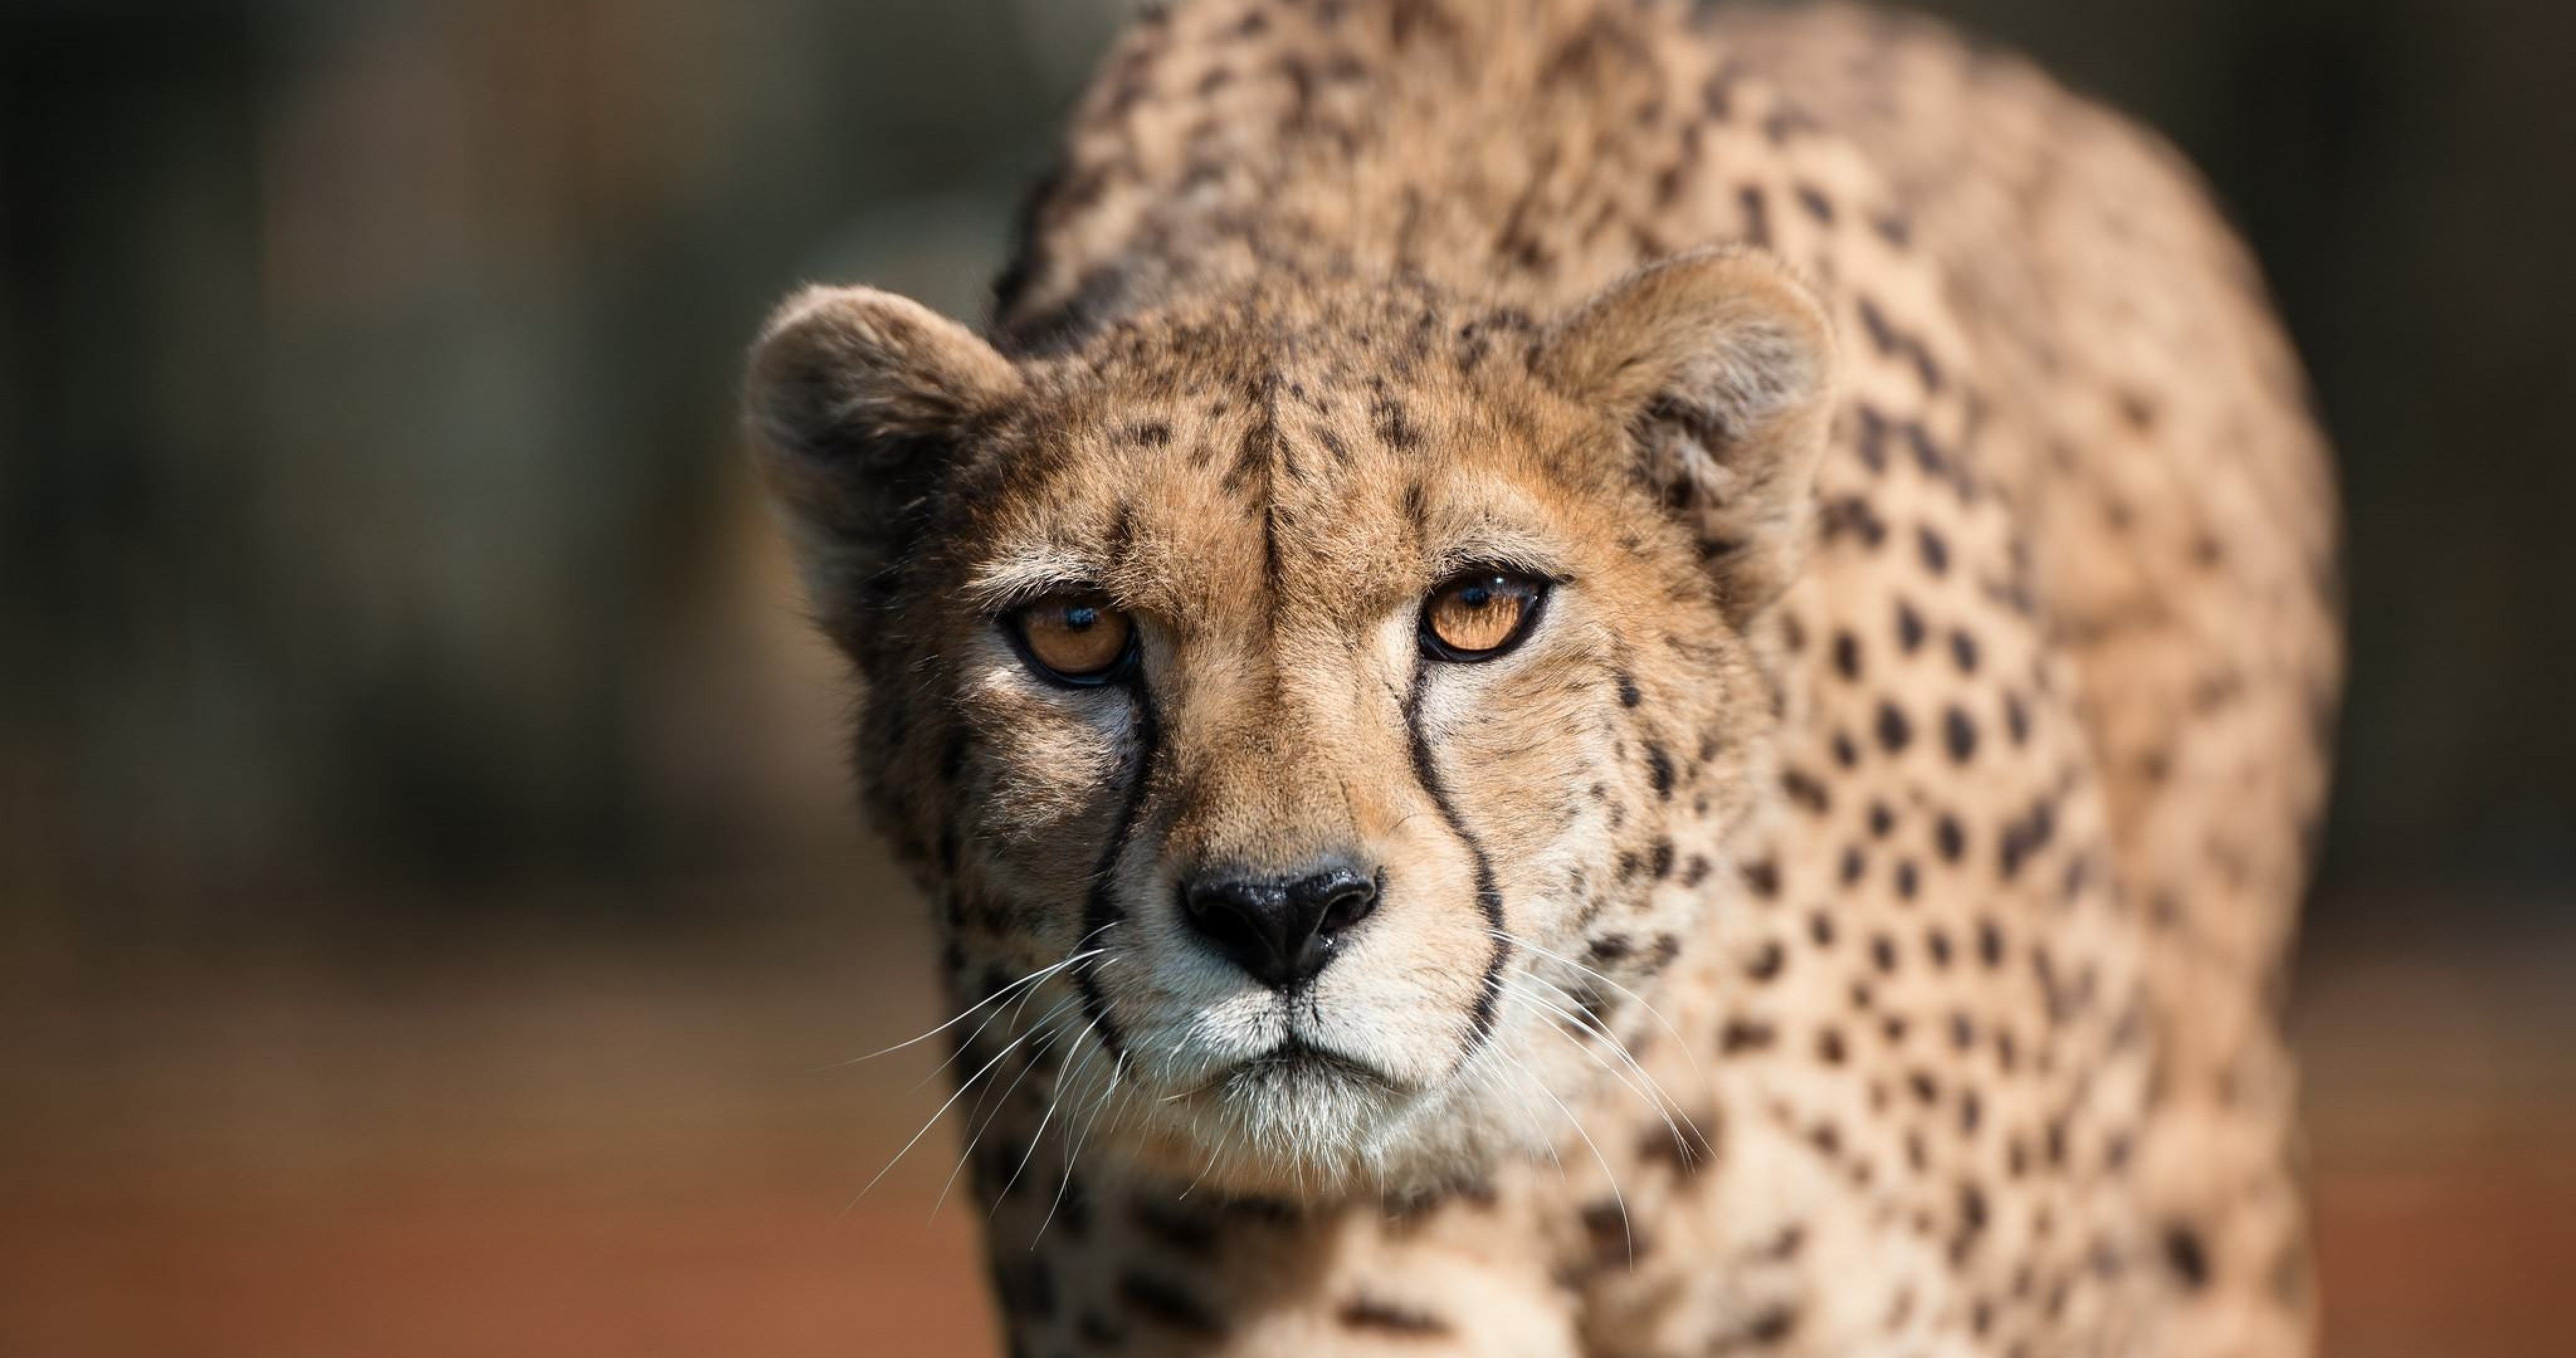 cheetah eyes 4k ultra HD wallpaper. Cheetahs, Predator, Cheetah